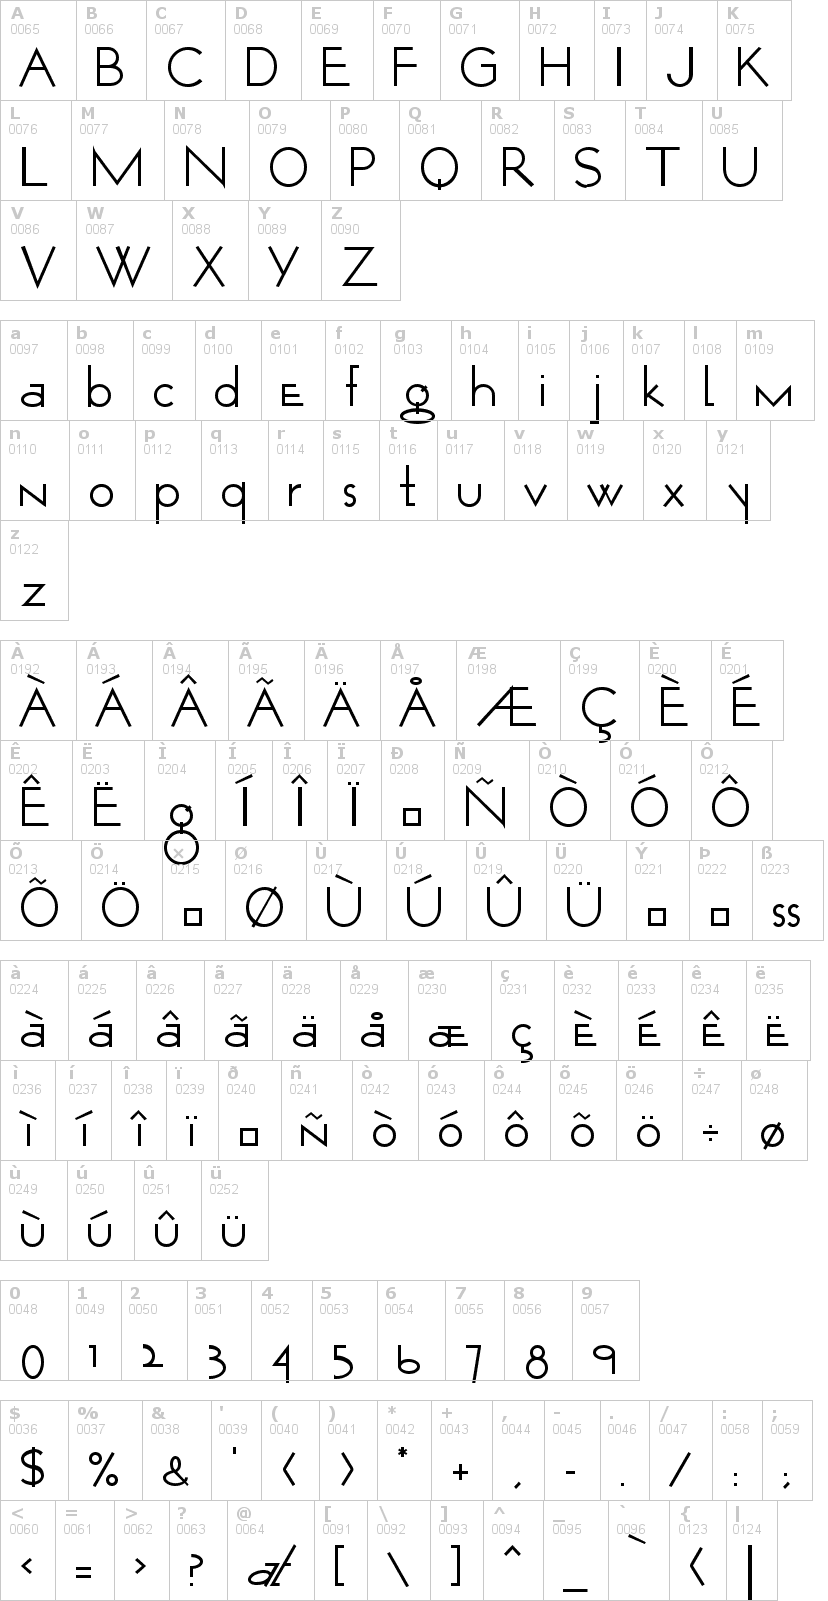 Lettere dell'alfabeto del font opticon-one con le quali è possibile realizzare adesivi prespaziati